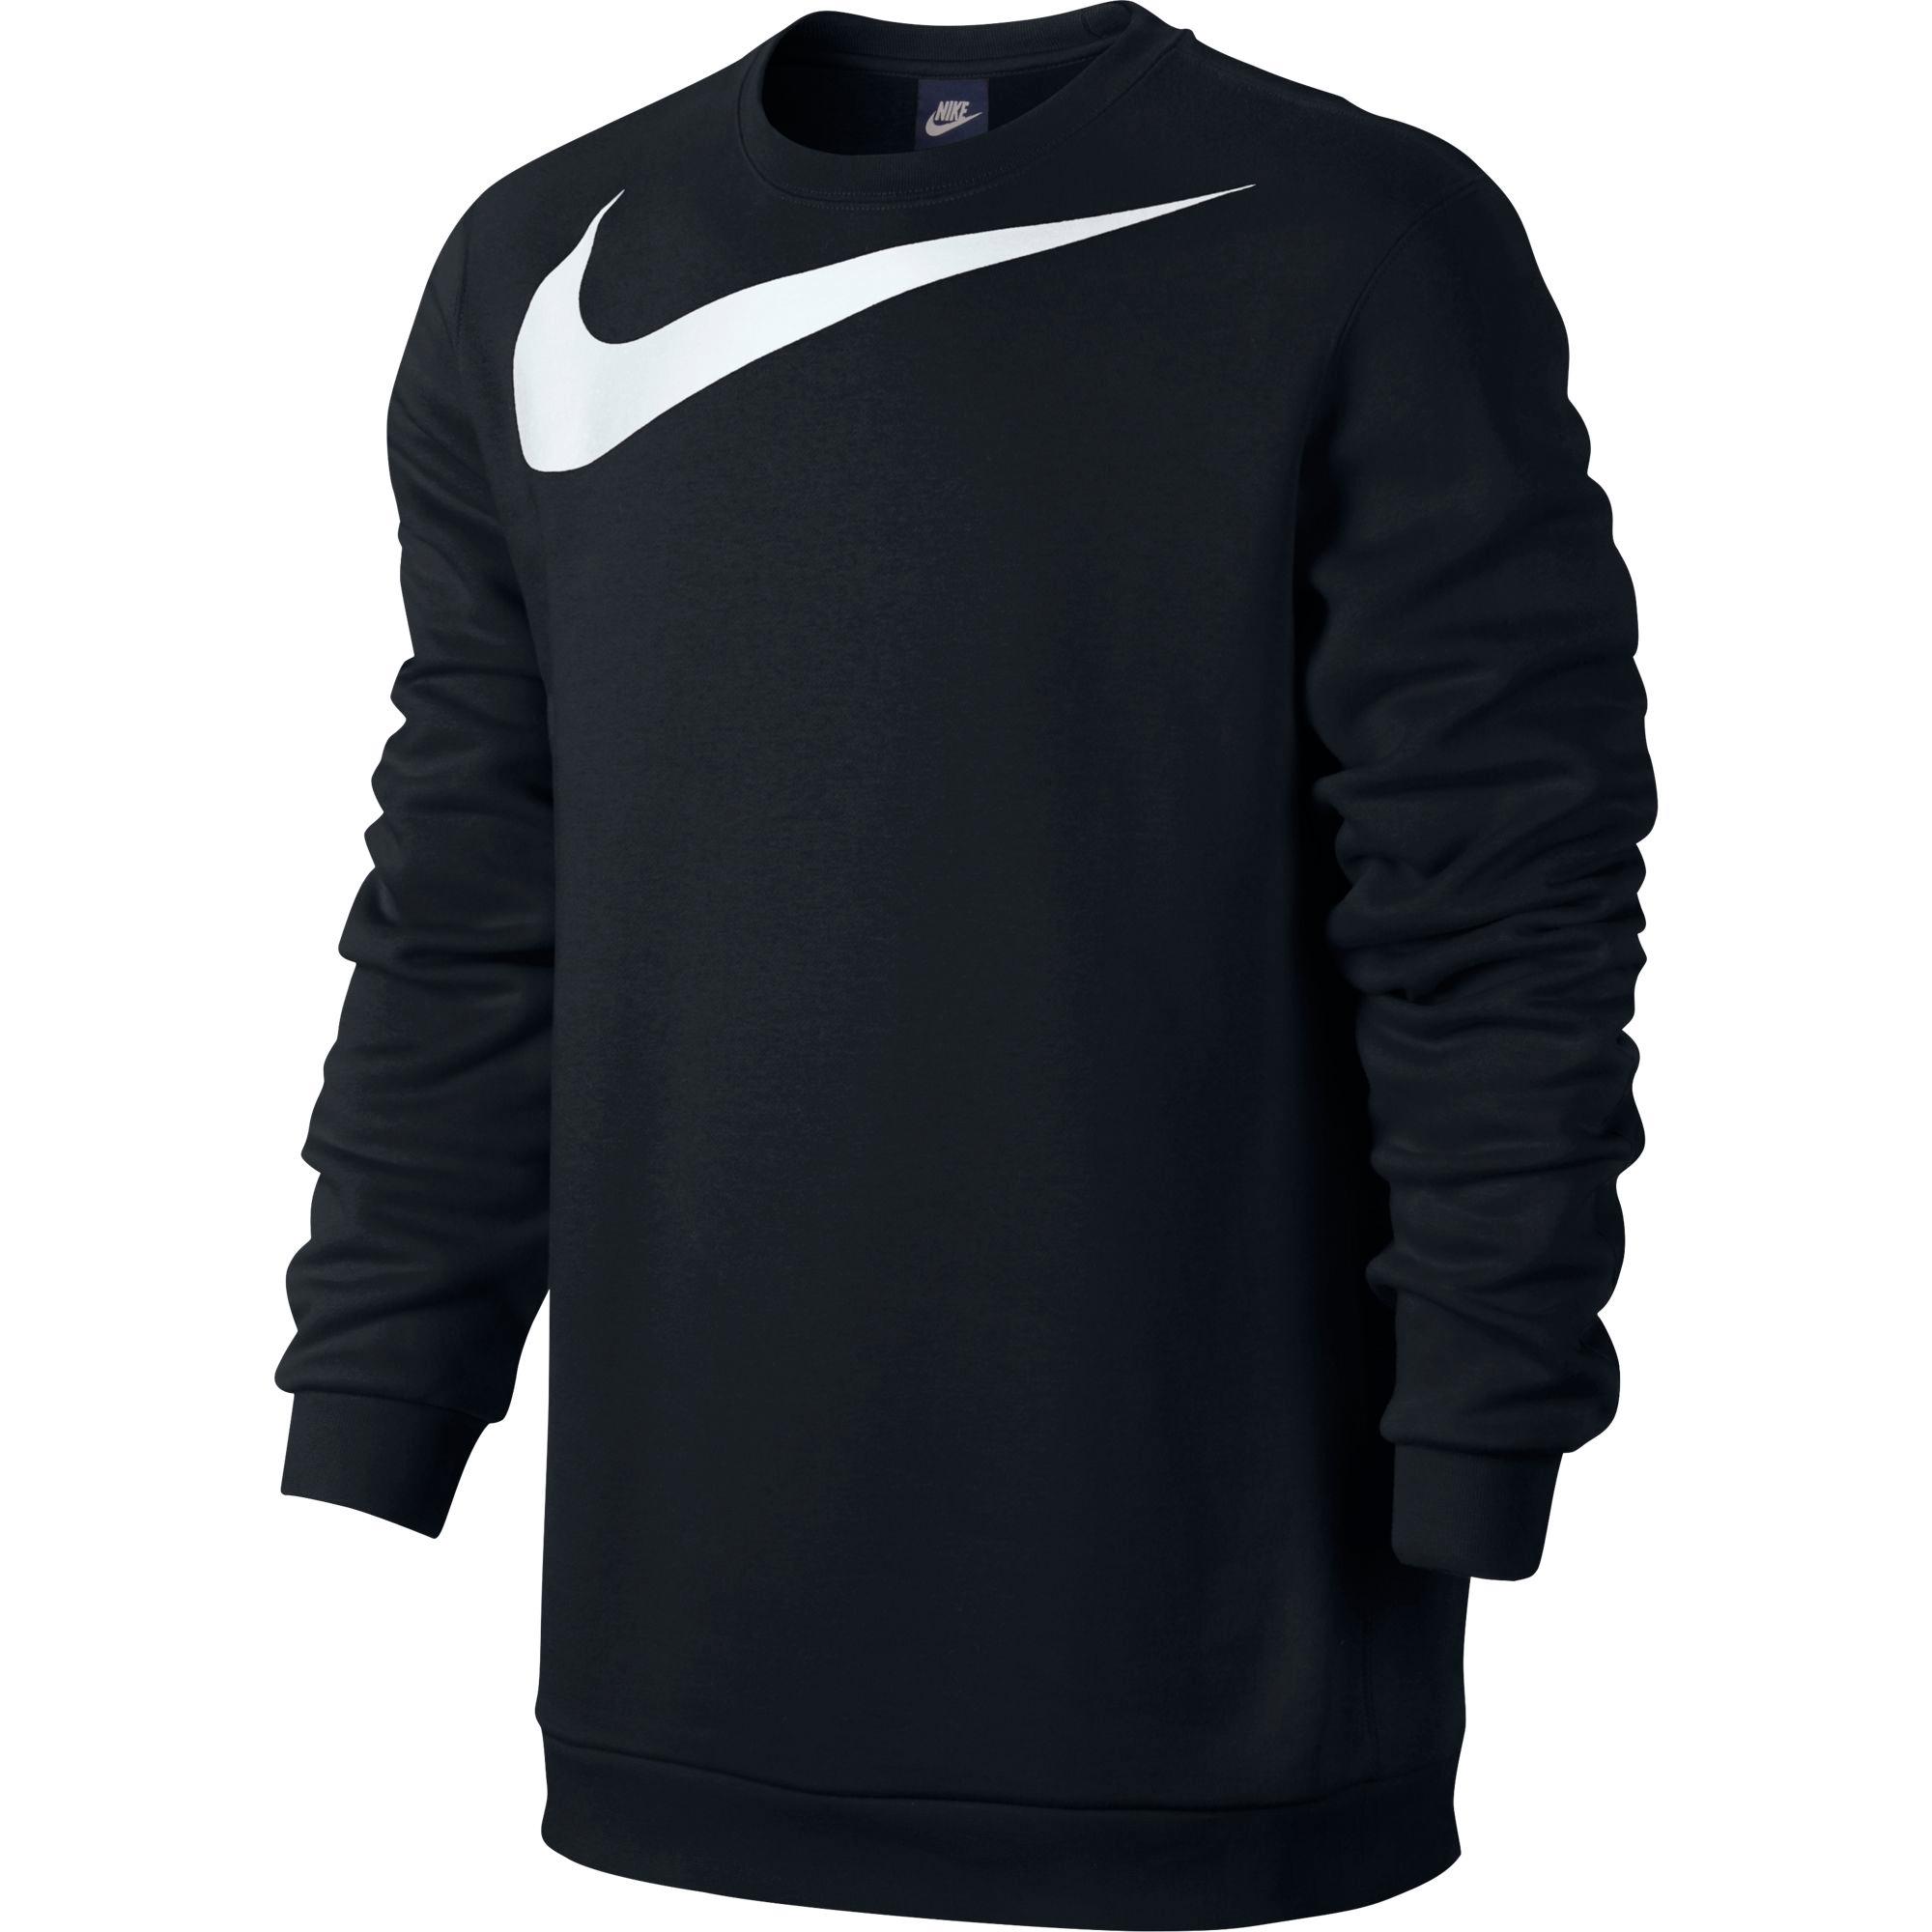 Nike Mens Sportswear Crew Sweatshirt - Black - Tennisnuts.com